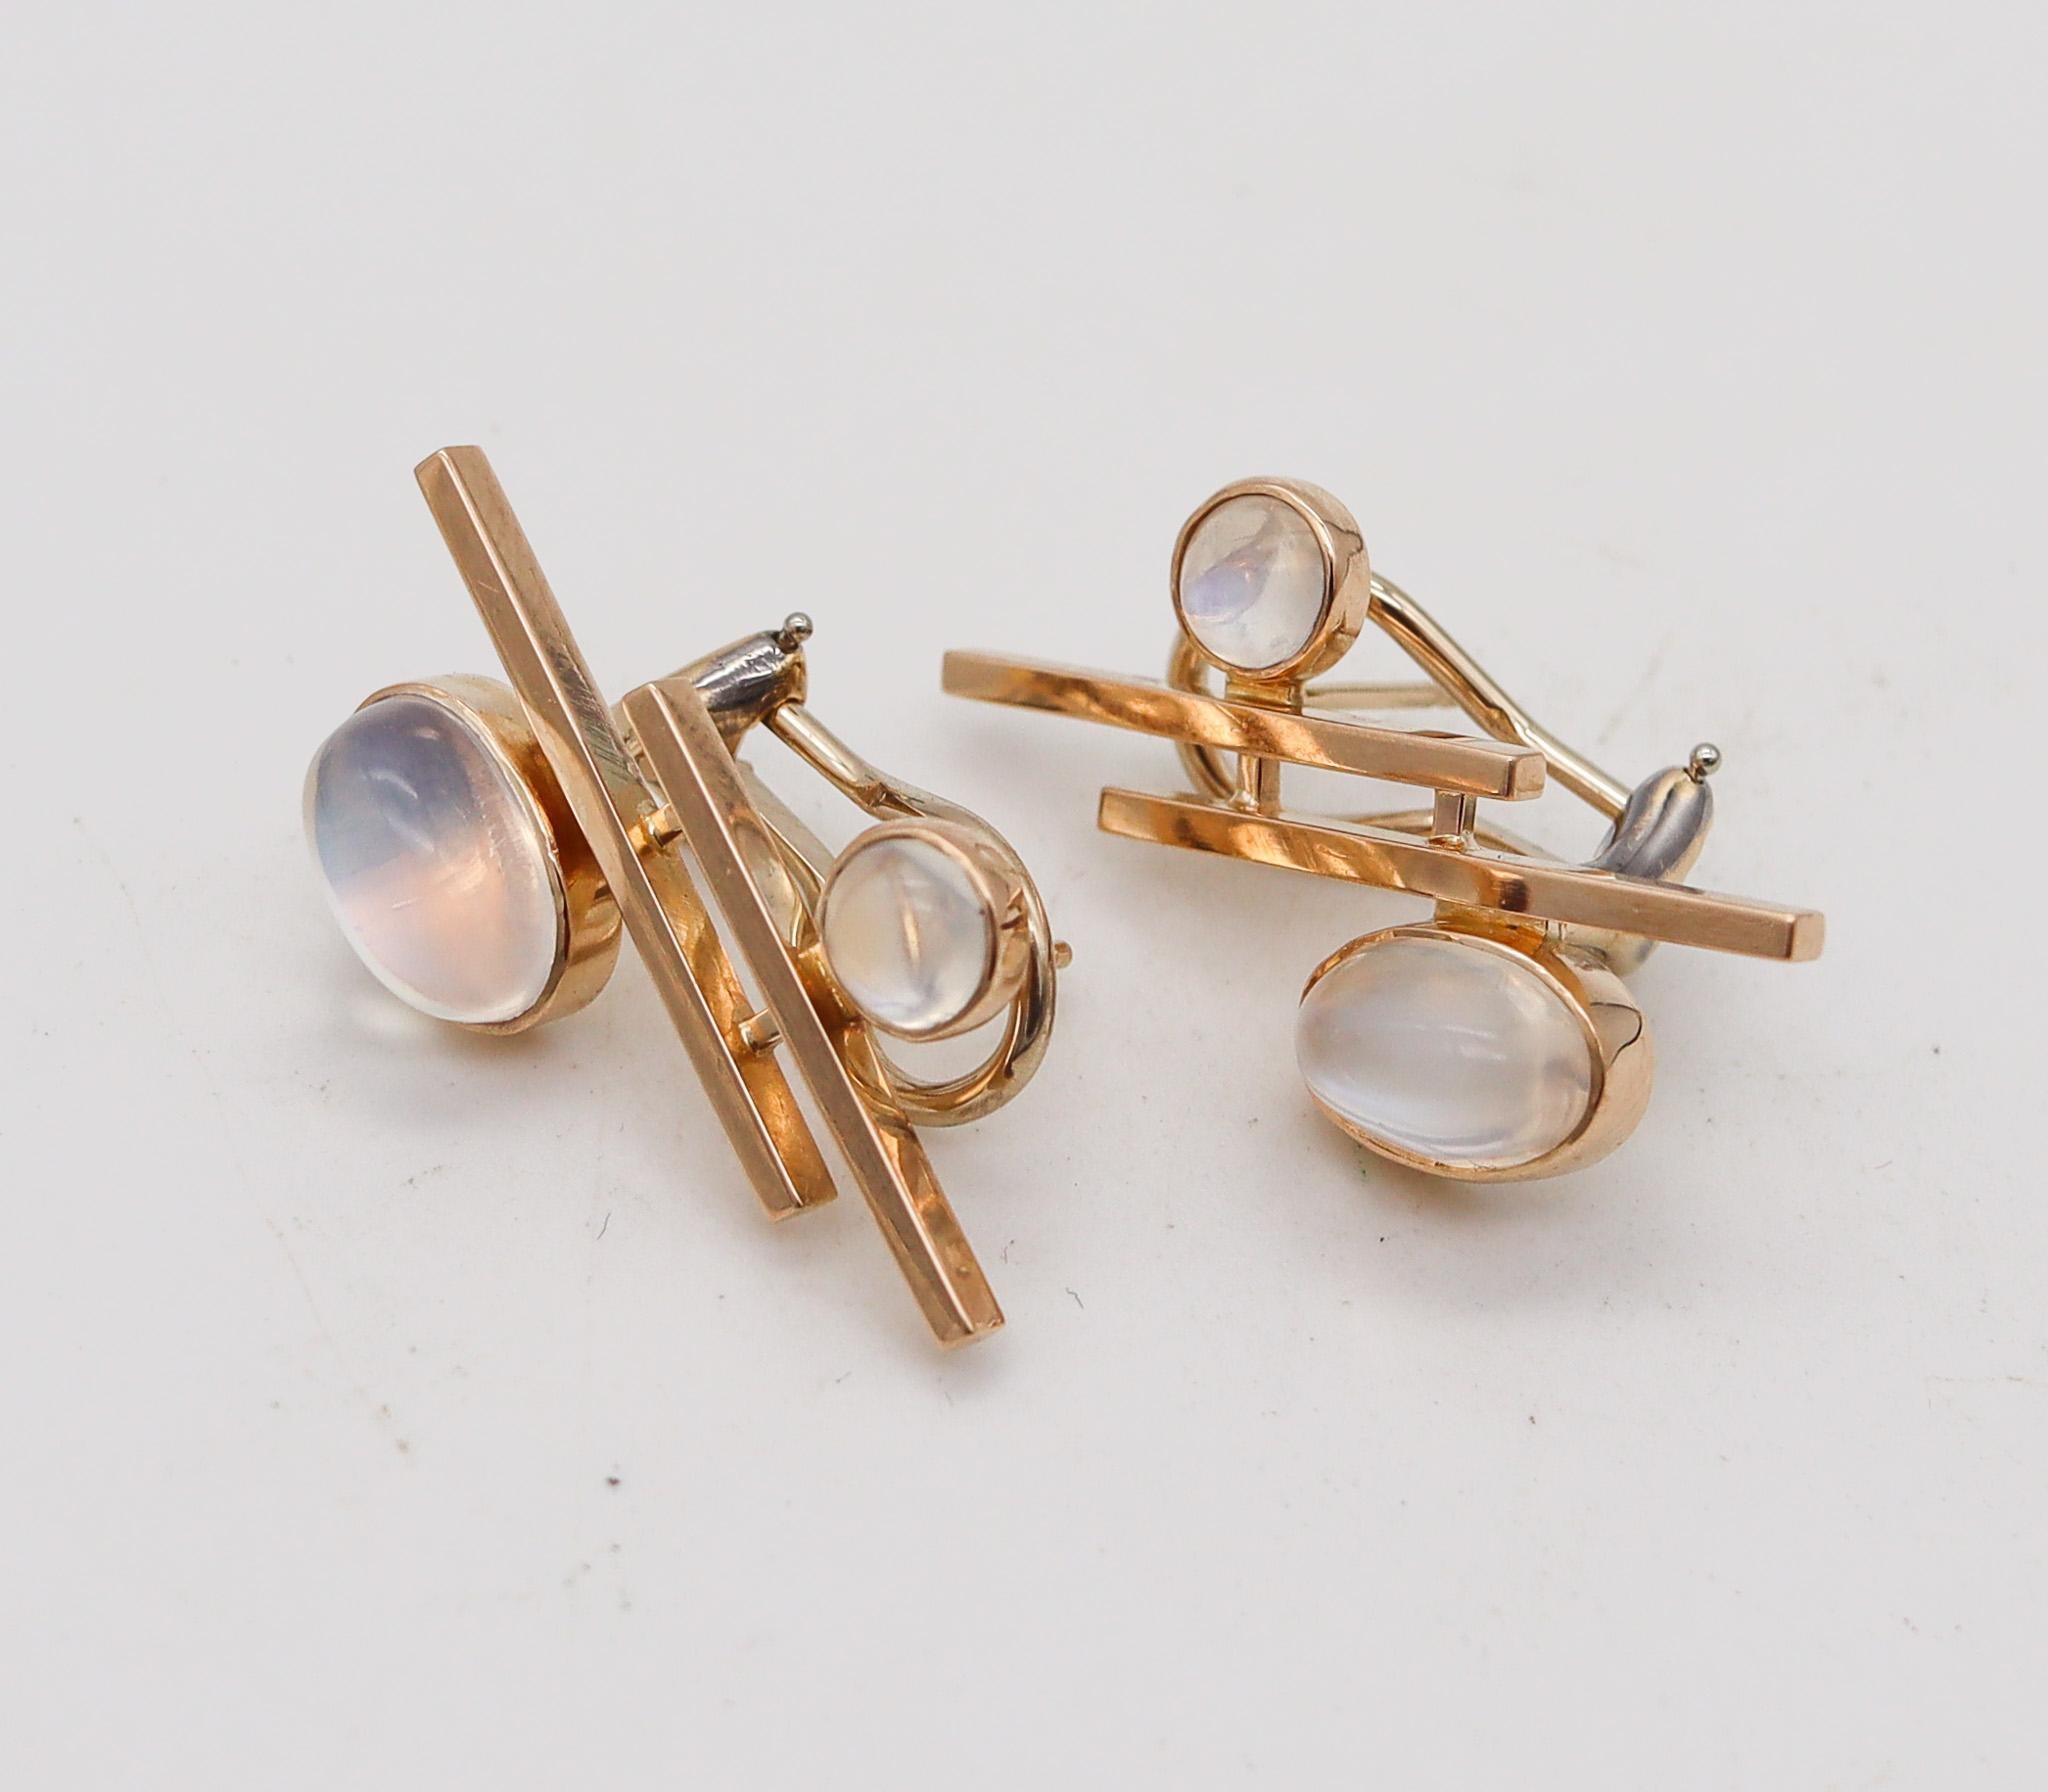 Modernist John Victor Rørvig 1965 Geometric Earrings In 18kt Gold With Four Moonstones